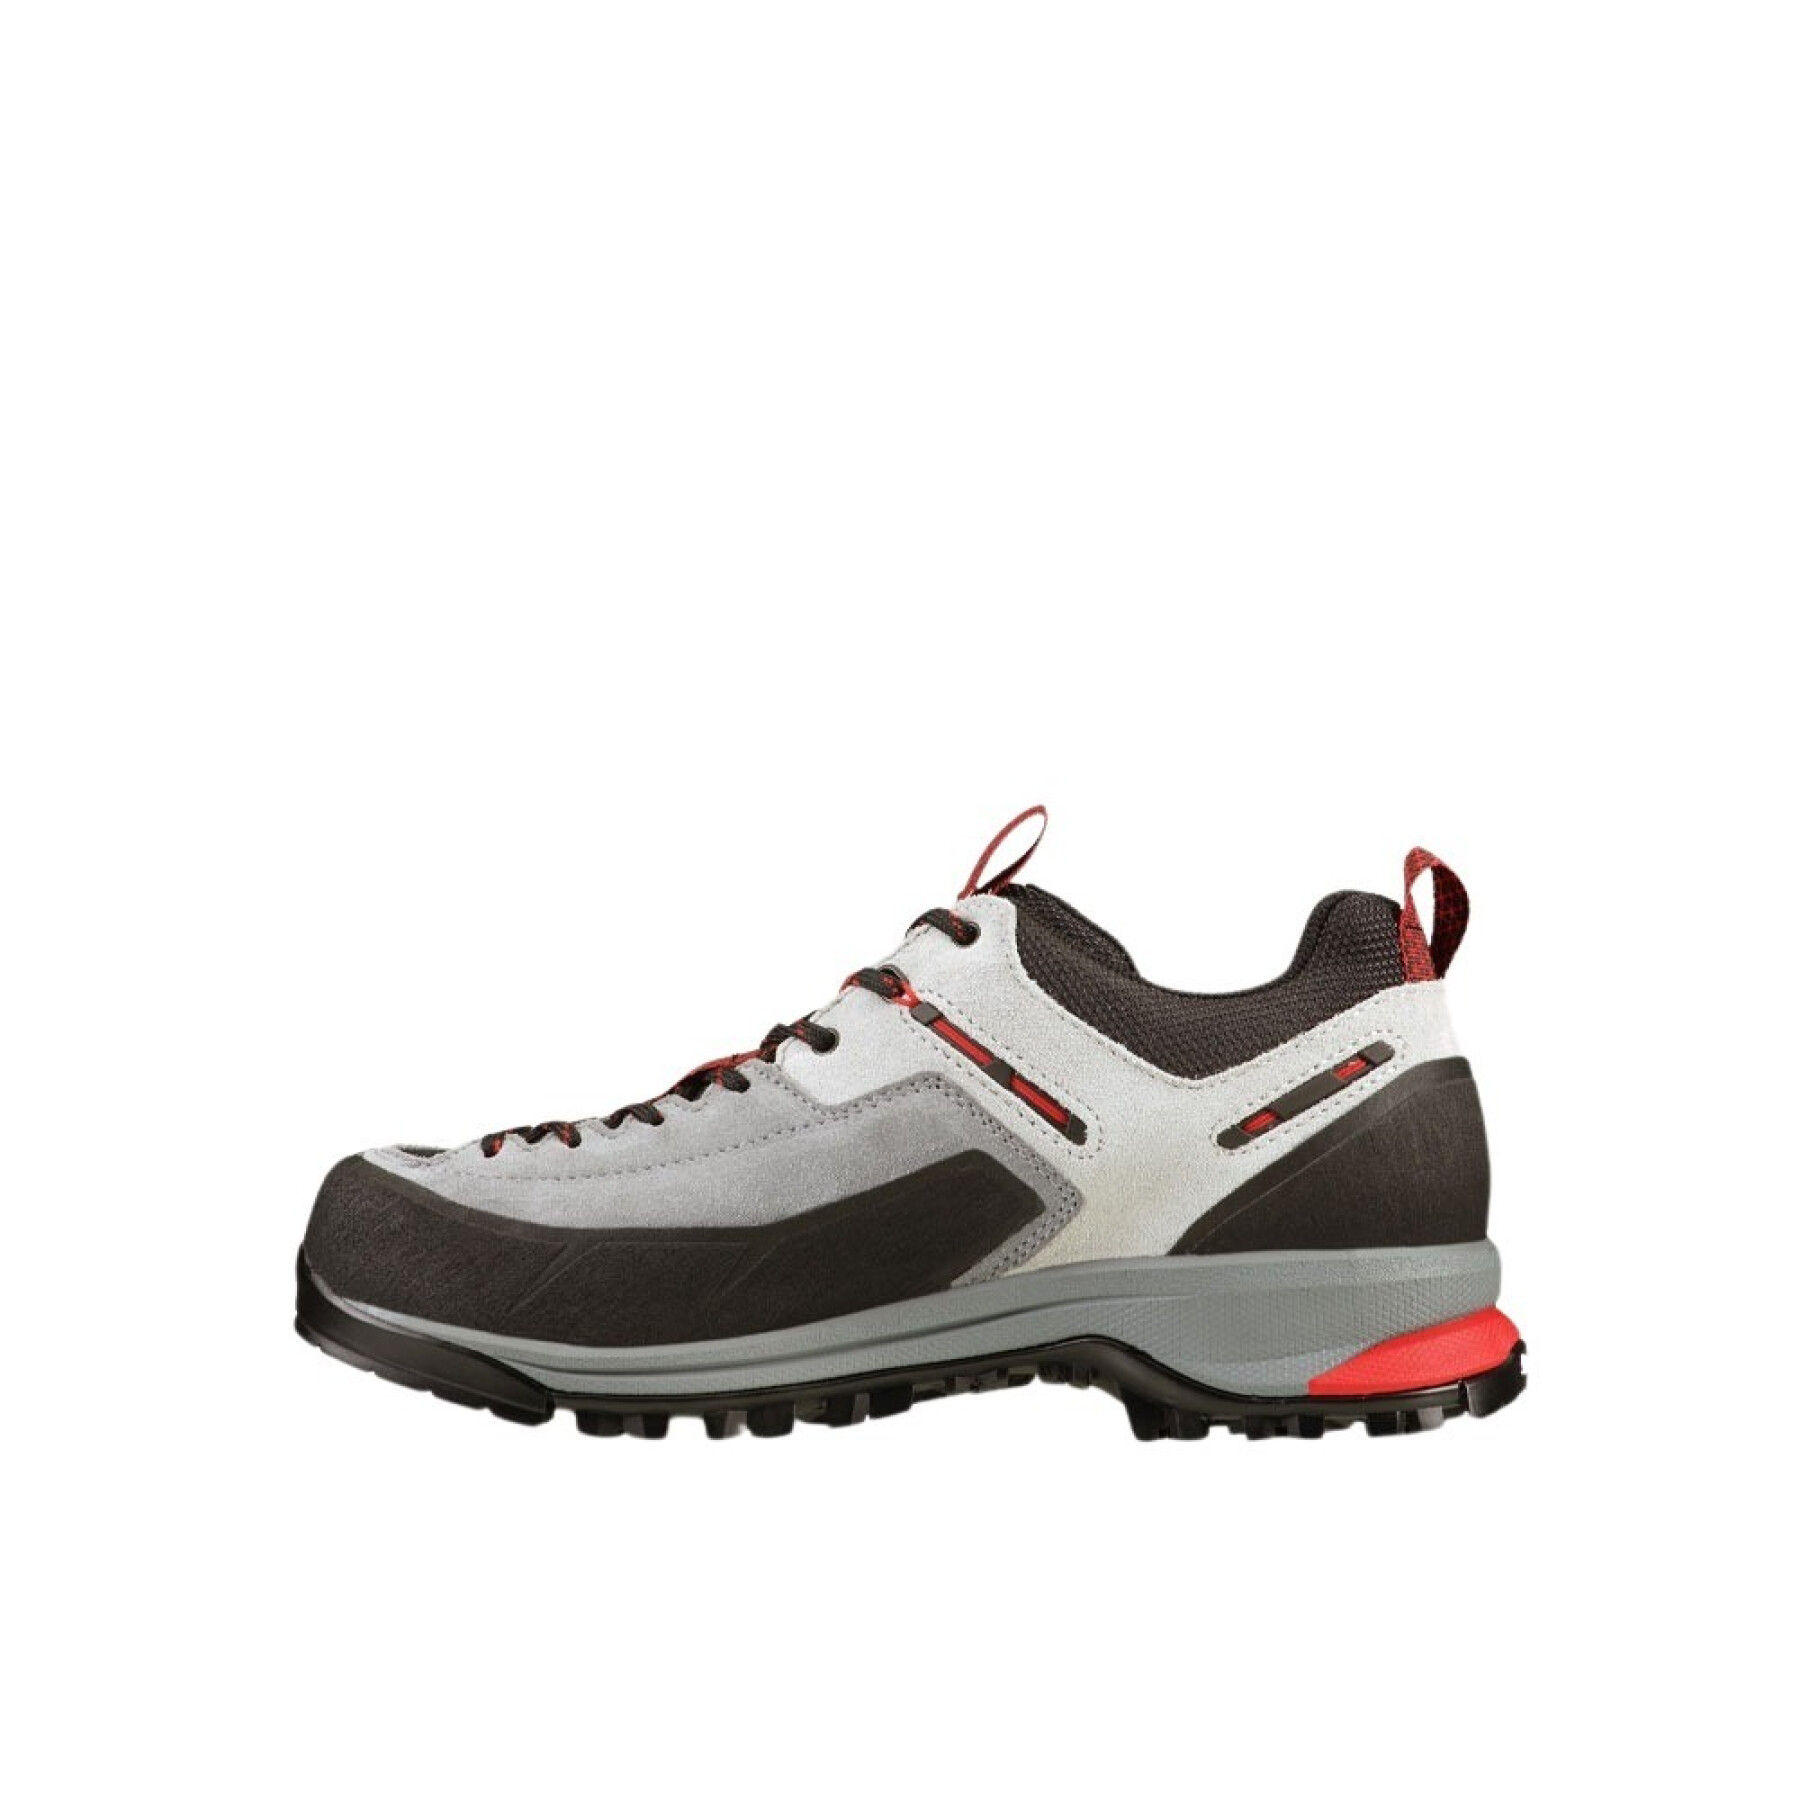 Hiking shoes Garmont Dragontail Tech GTX